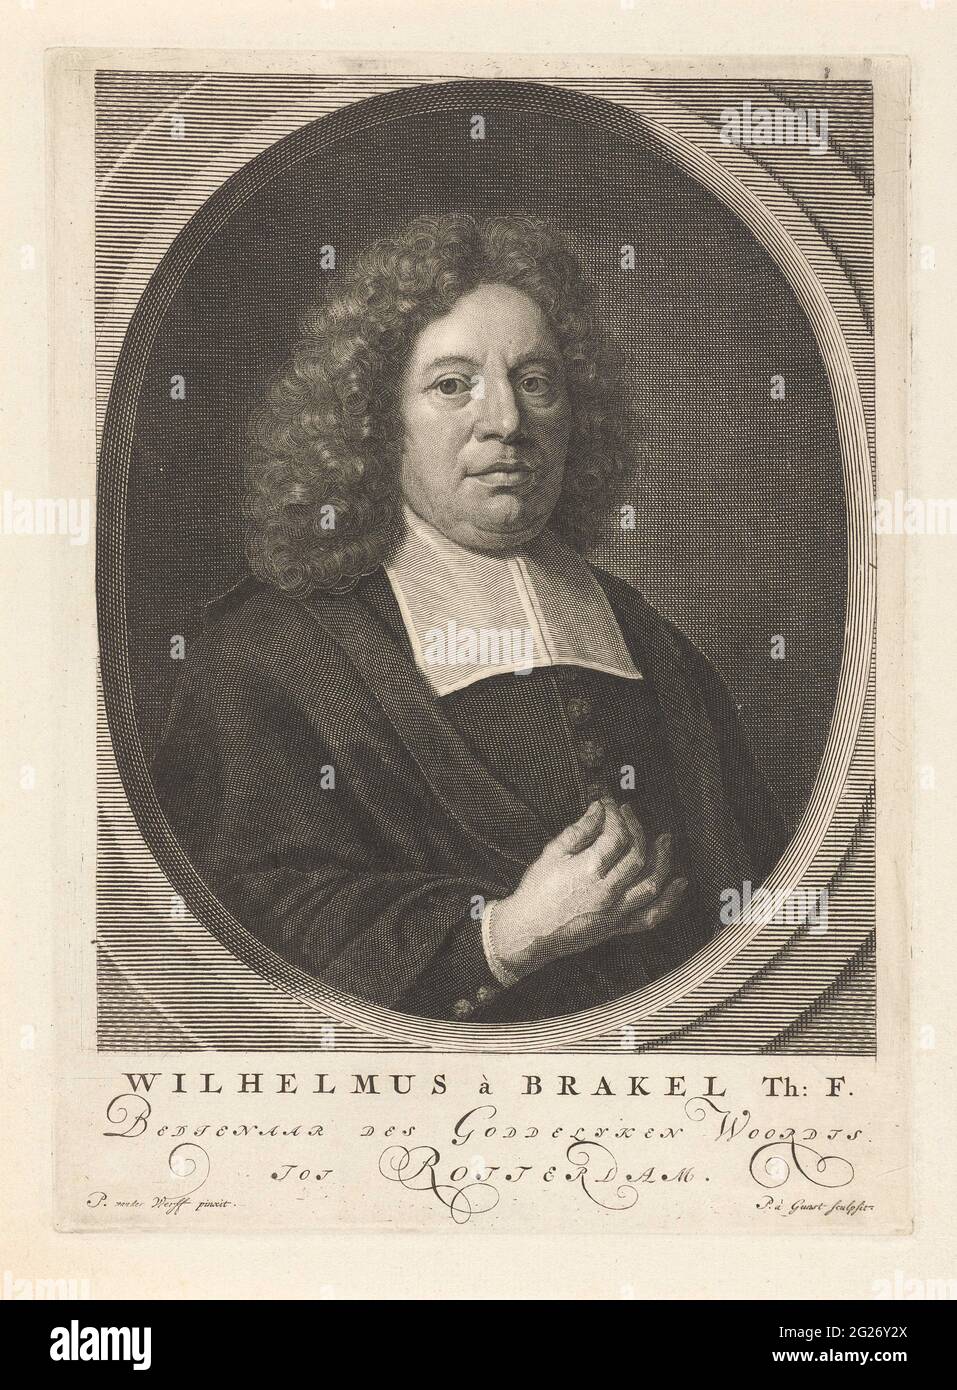 Portrait of Willem van Brakel. Willem van Brakel, a Rotterdam preacher ...